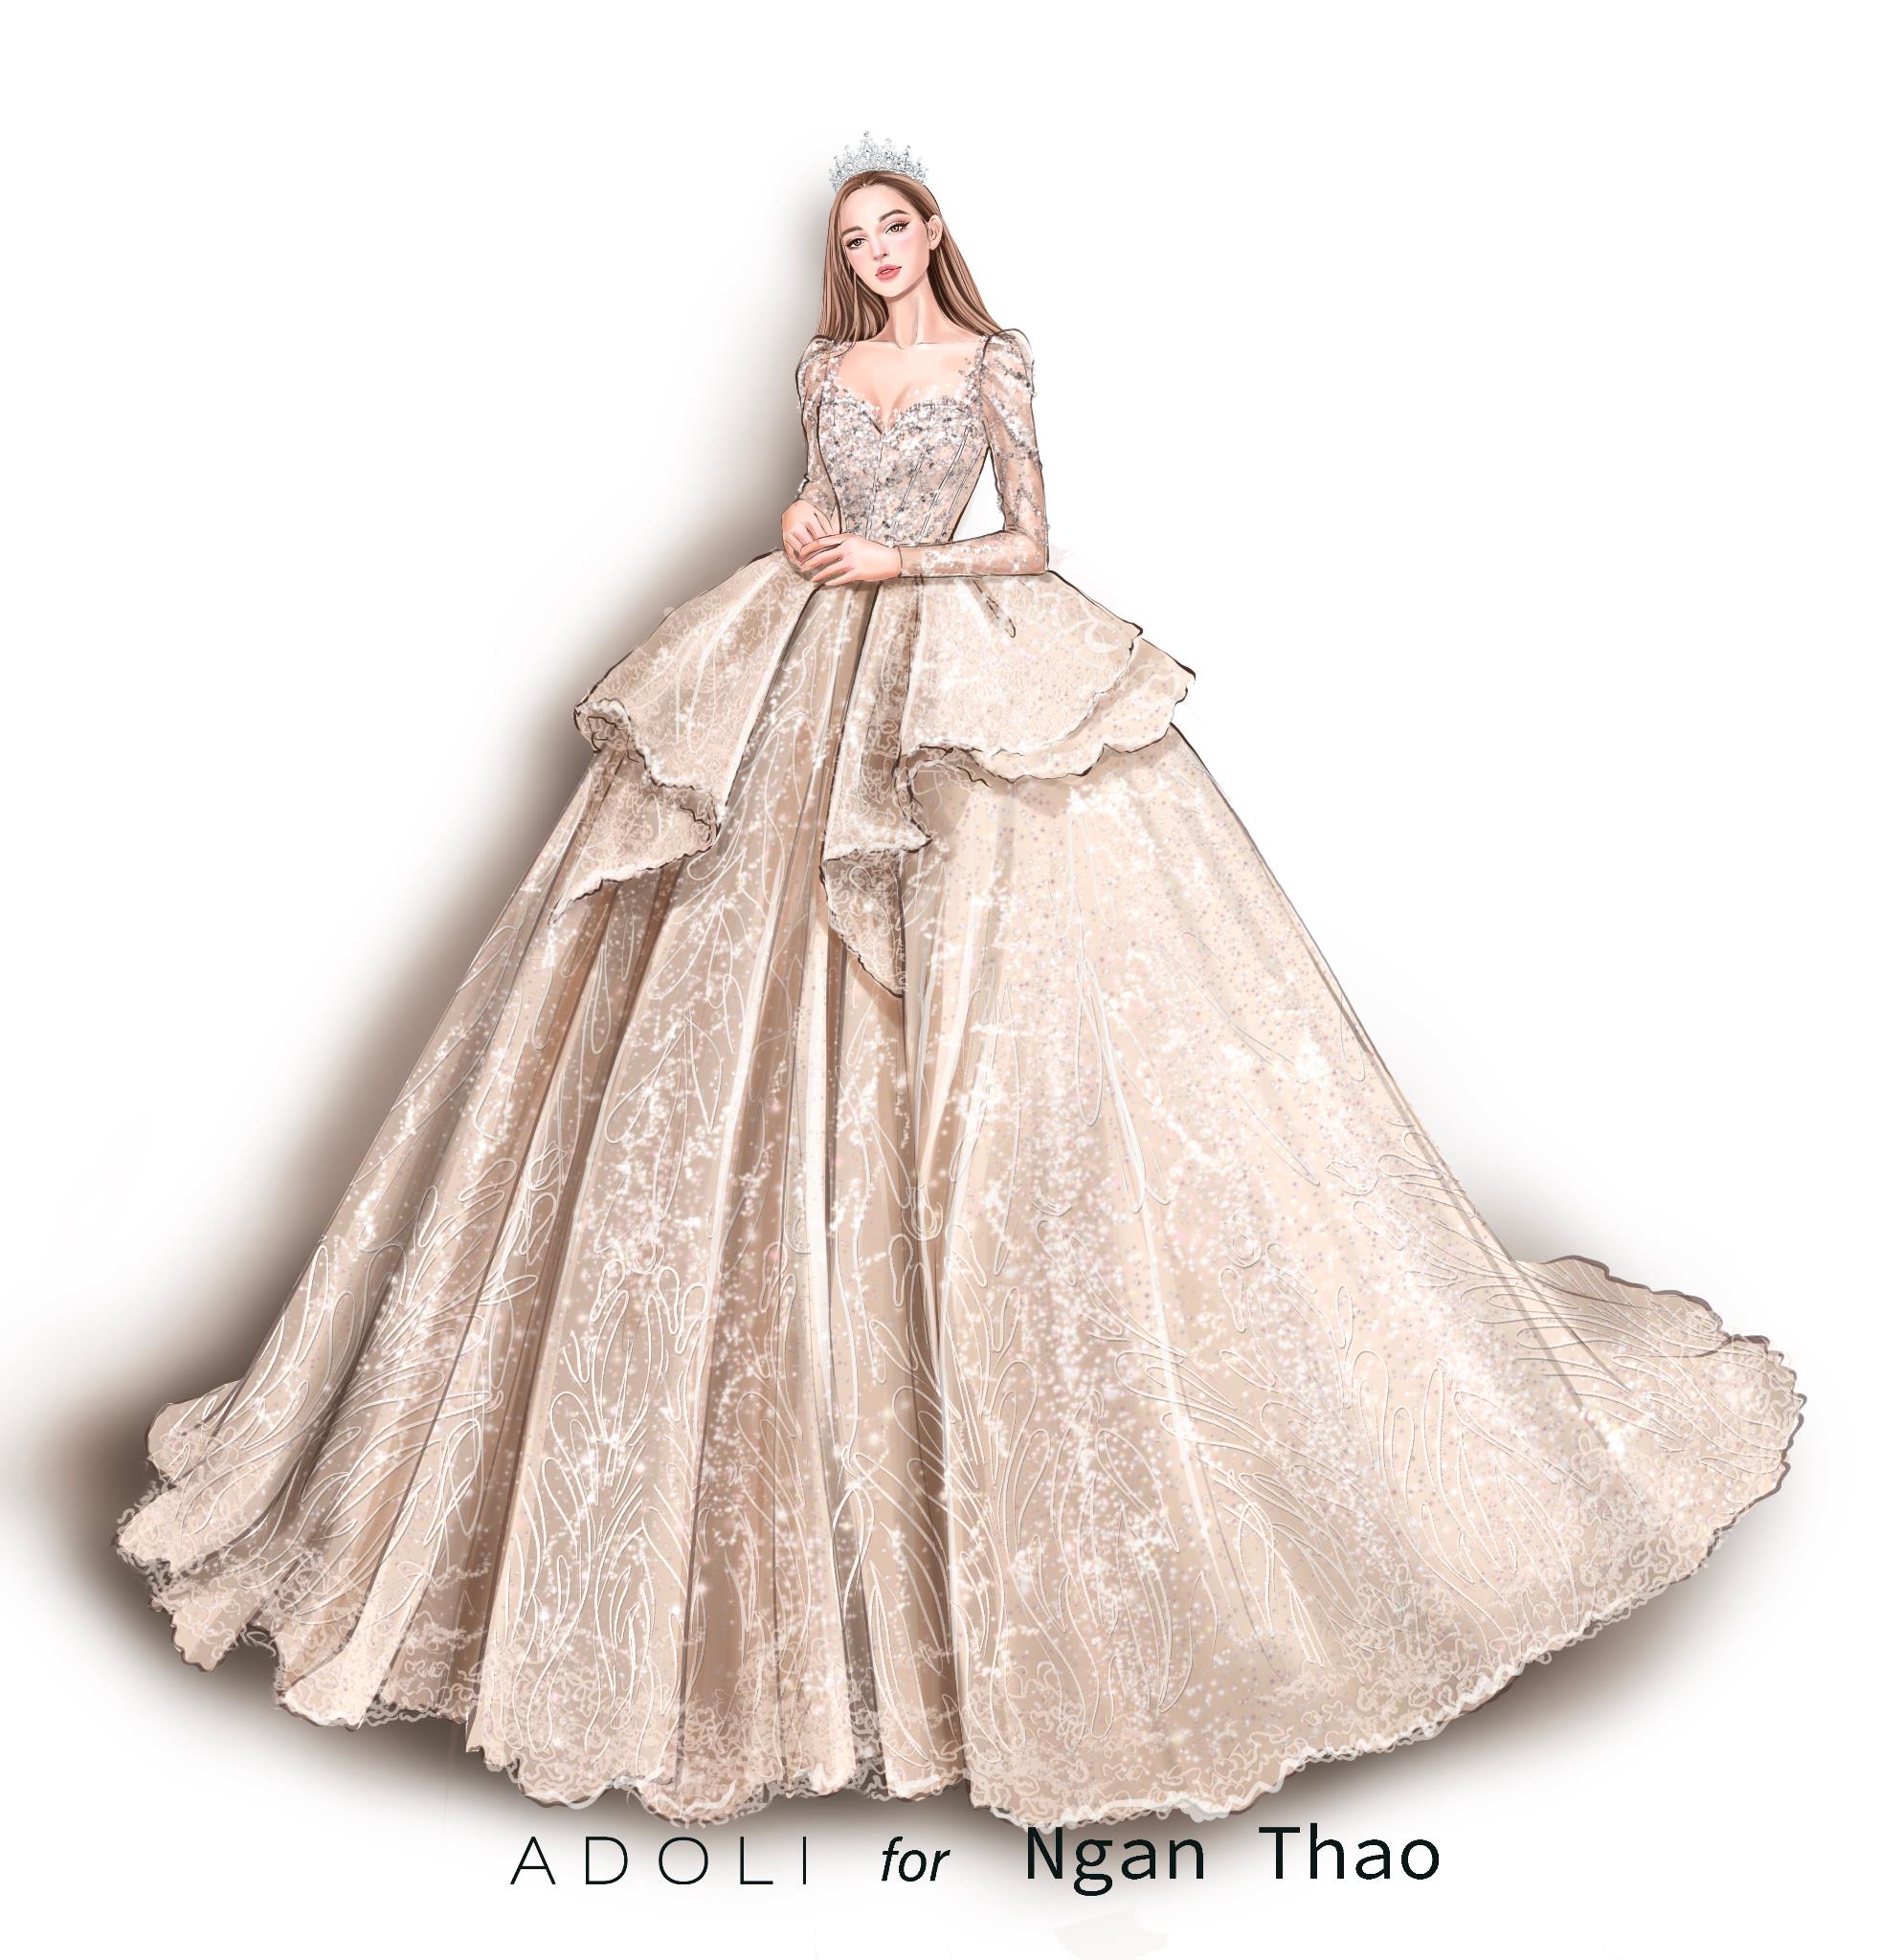 “Thánh Sún” Ngân Thảo nổi bật trong ngày trọng đại với bộ váy cưới 100 triệu đồng đến từ thương hiệu ADOLI - Ảnh 1.